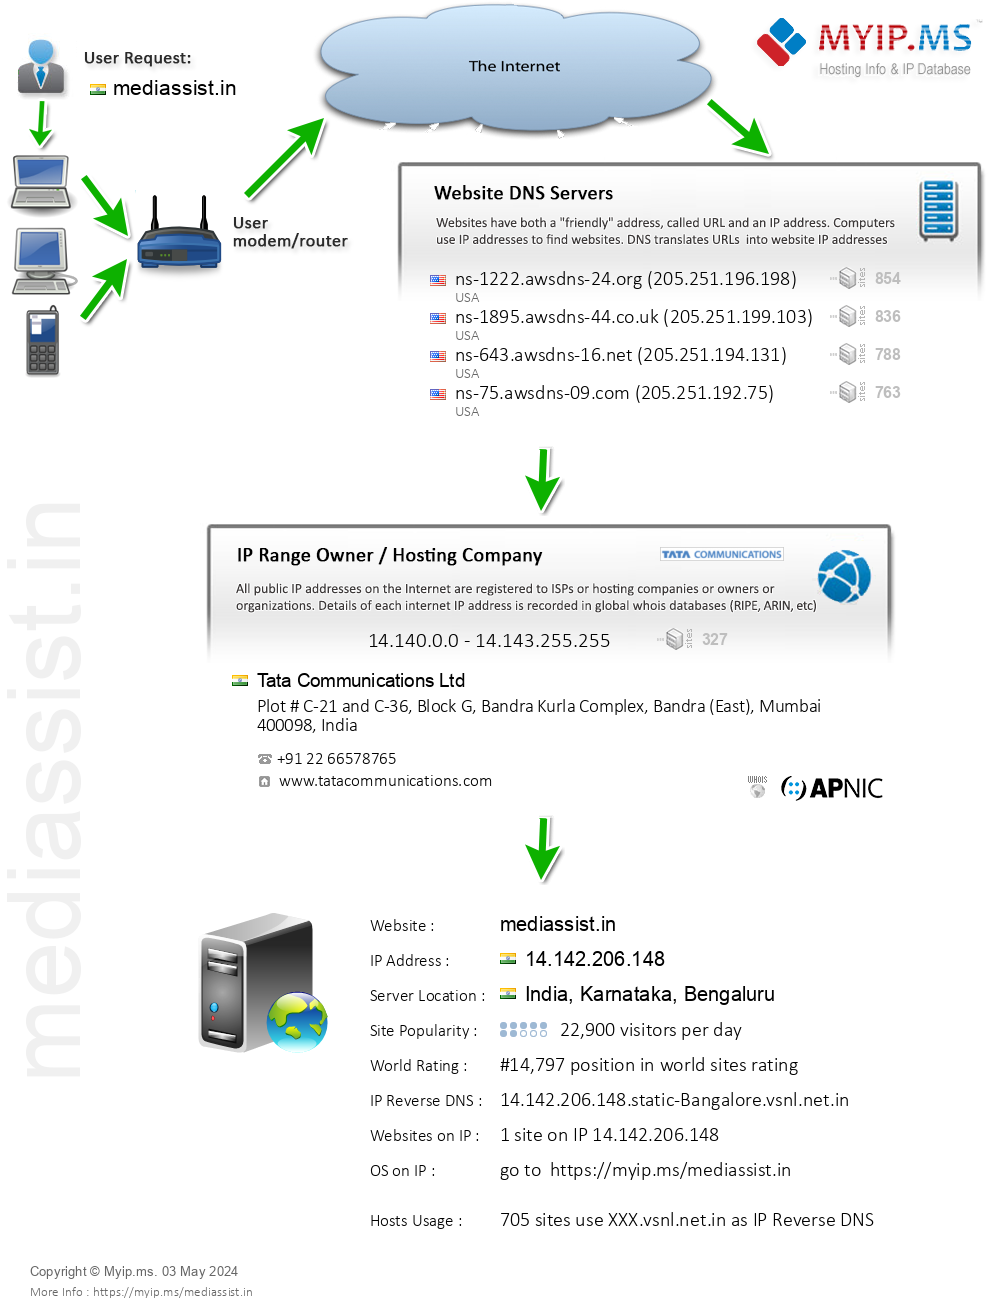 Mediassist.in - Website Hosting Visual IP Diagram